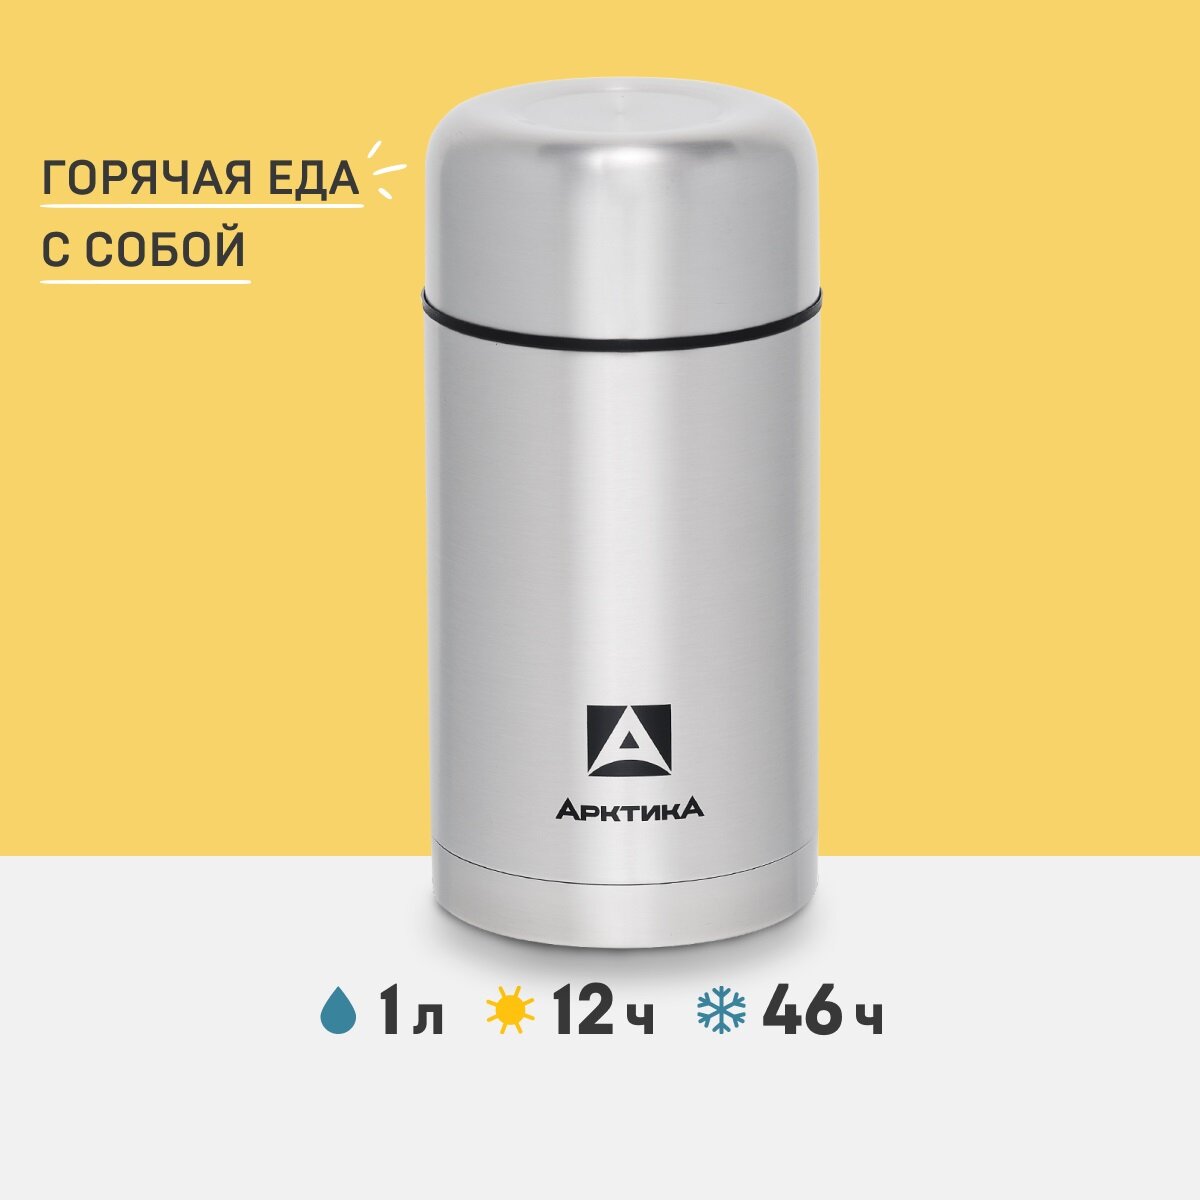 Термос вакуумный, бытовой, с широким горлом тм "Арктика", 1000 мл, арт. 301-1000